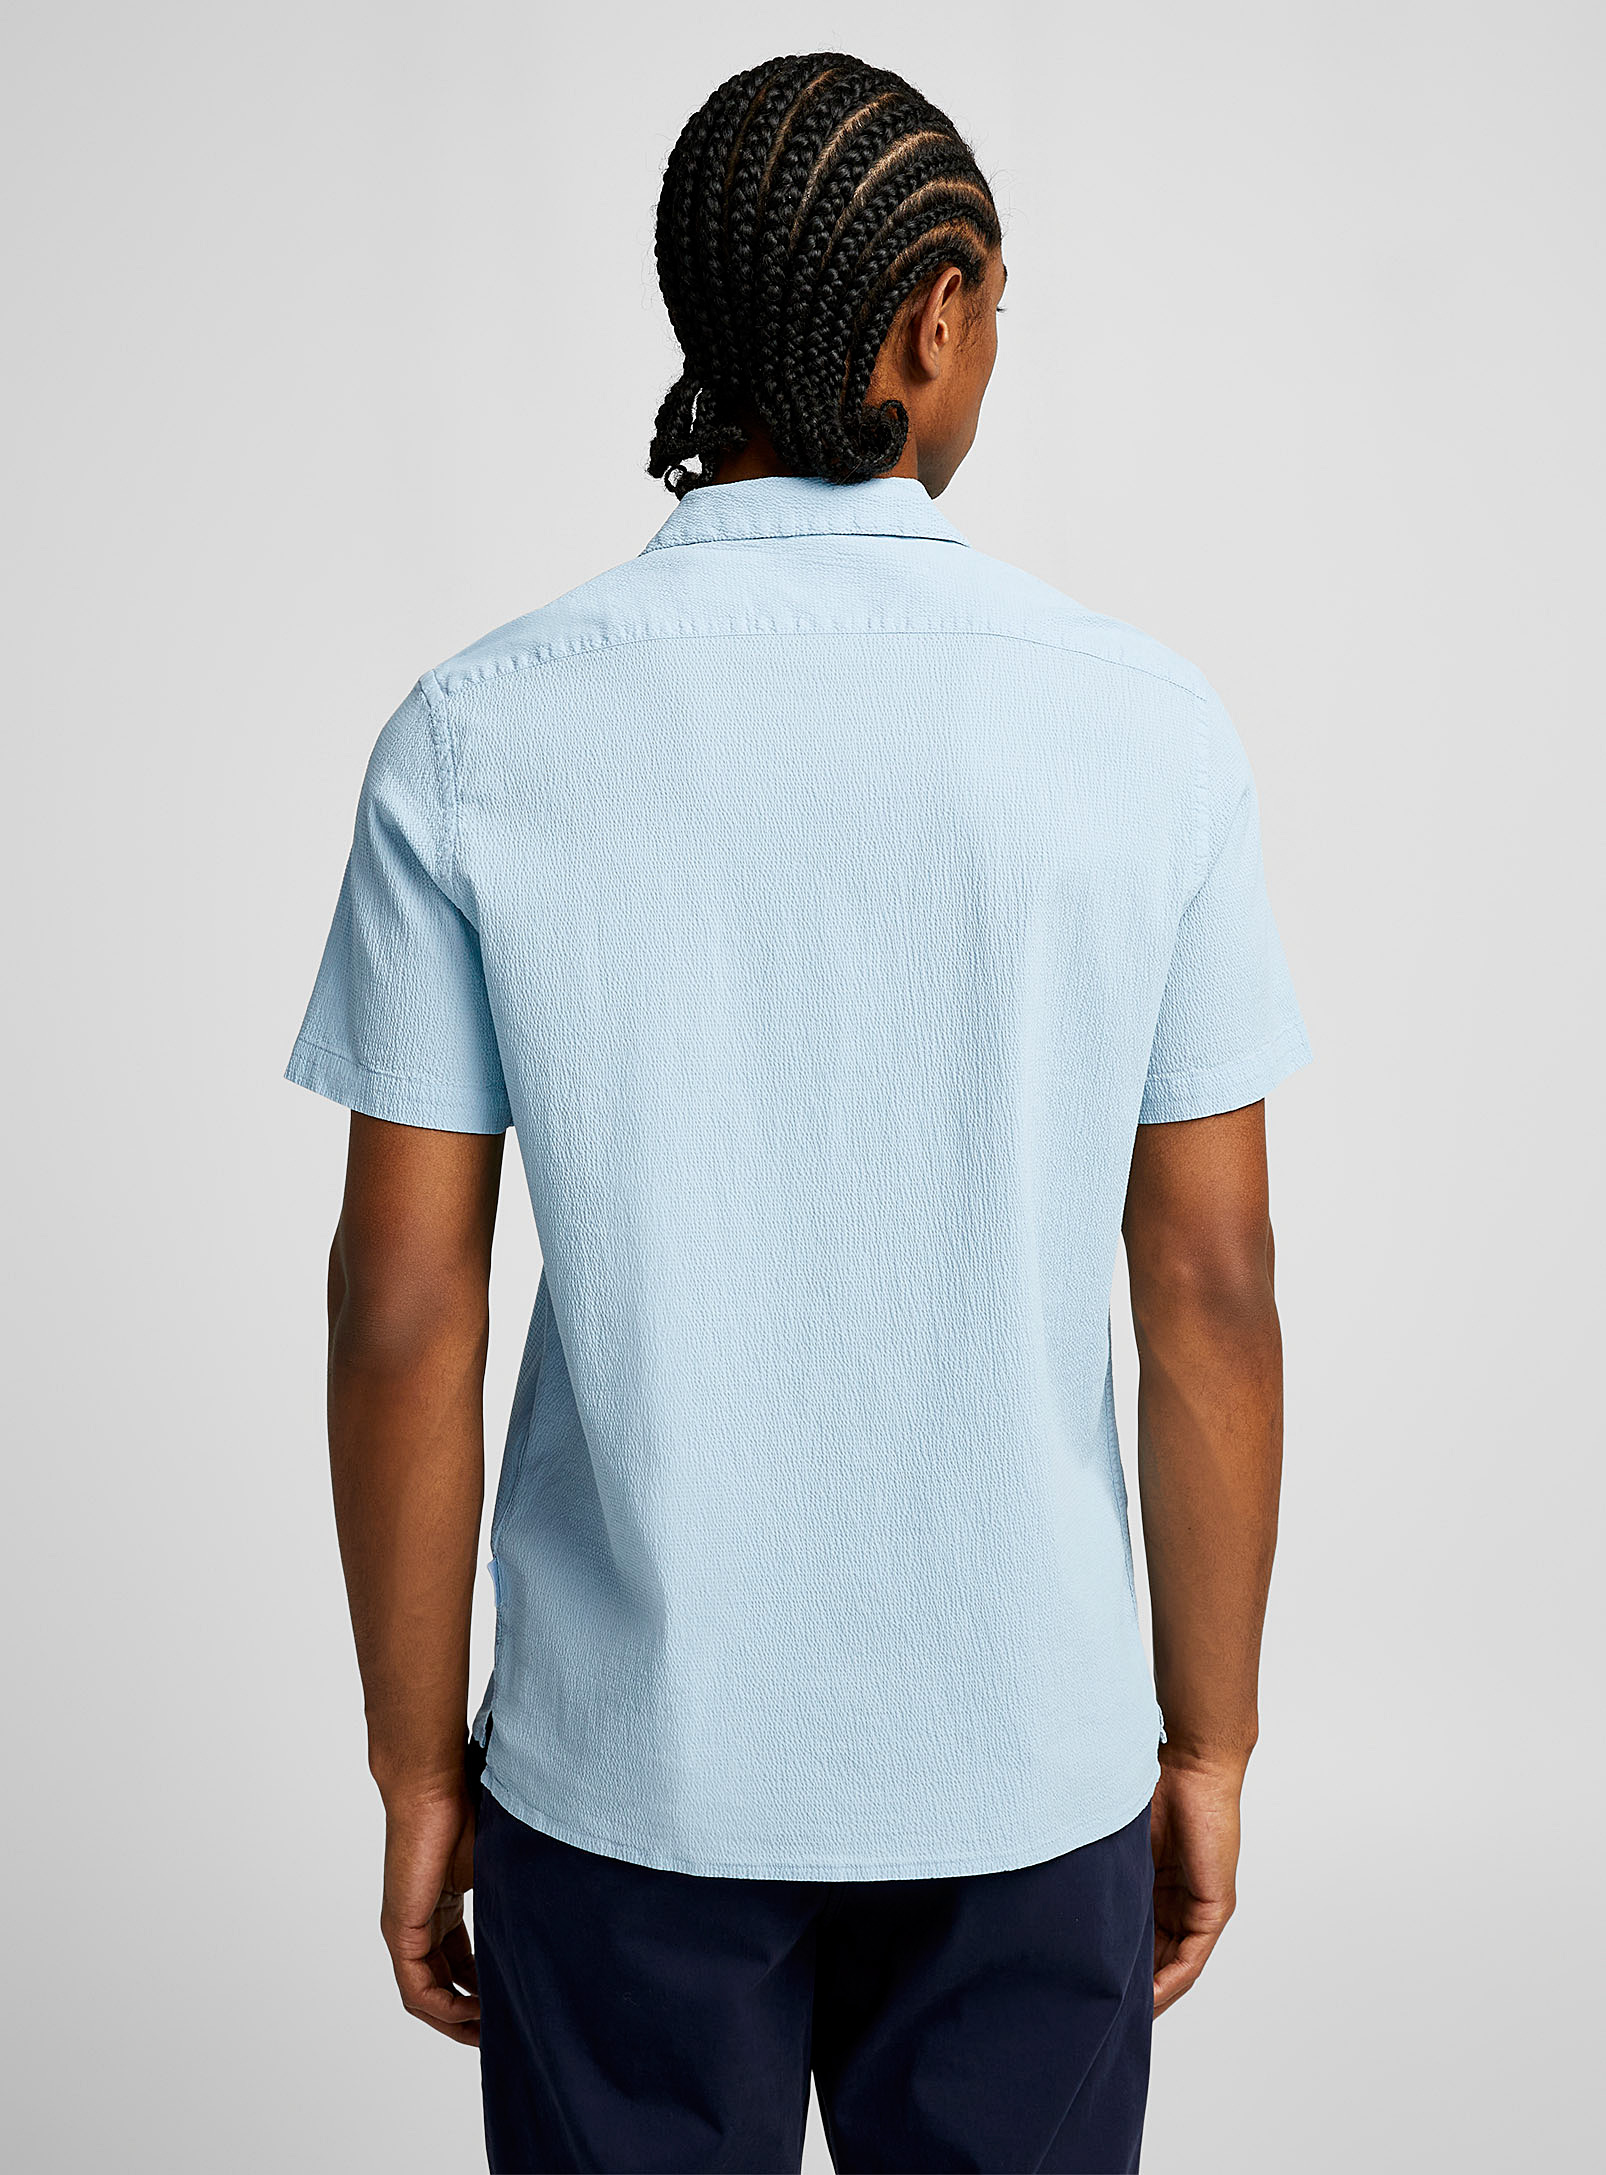 PS Paul Smith - La chemise bleue texturée